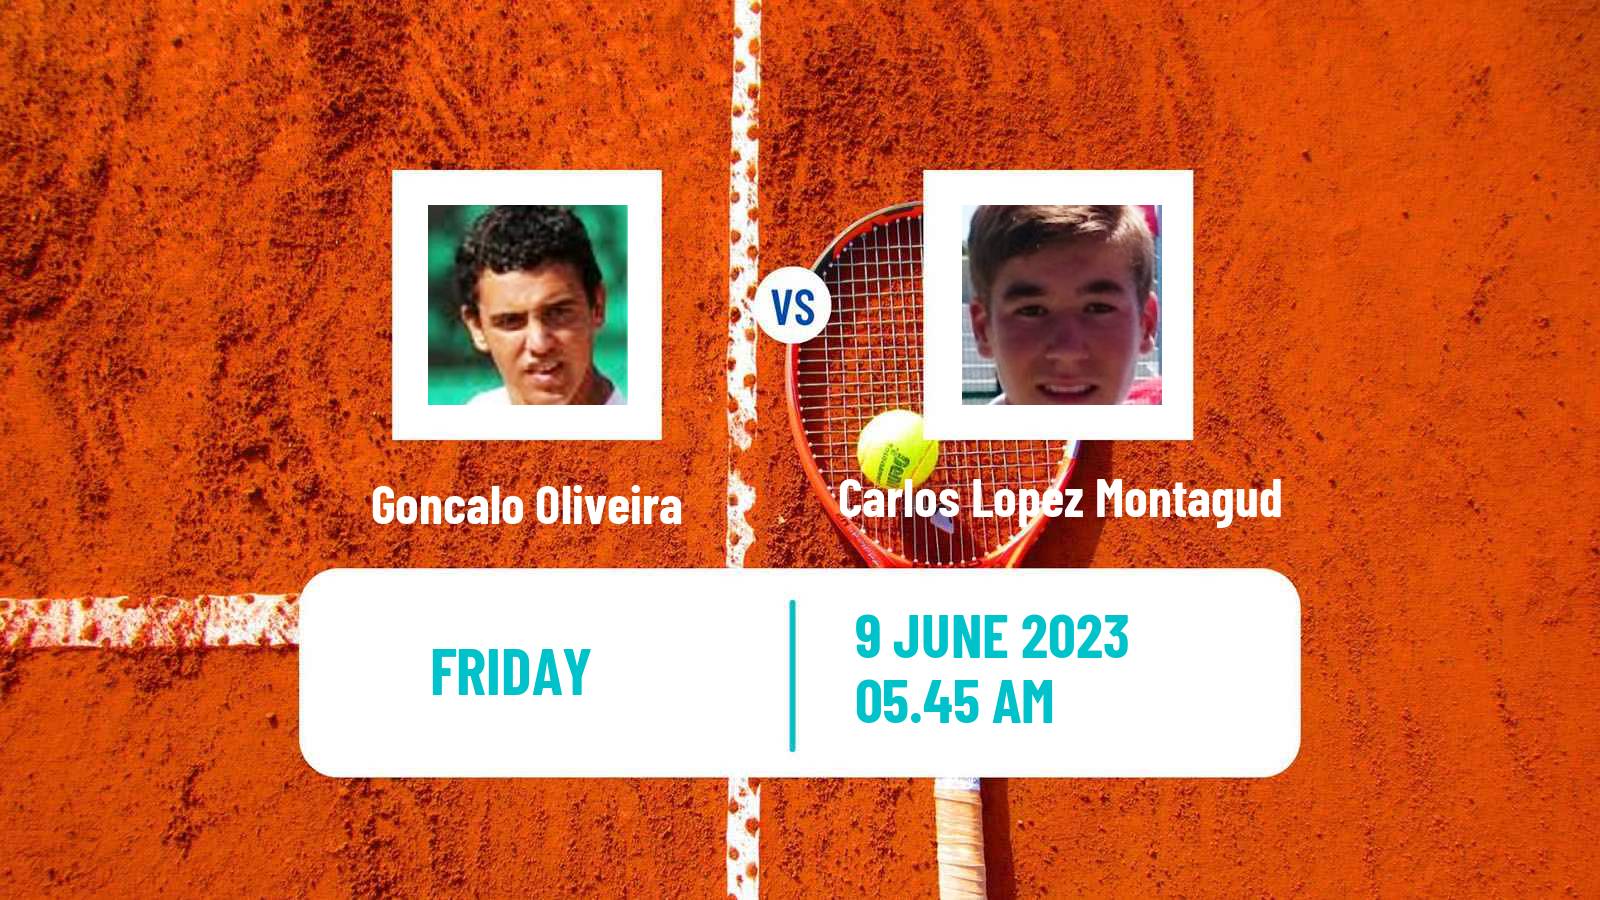 Tennis ITF M25 Cordoba Men Goncalo Oliveira - Carlos Lopez Montagud